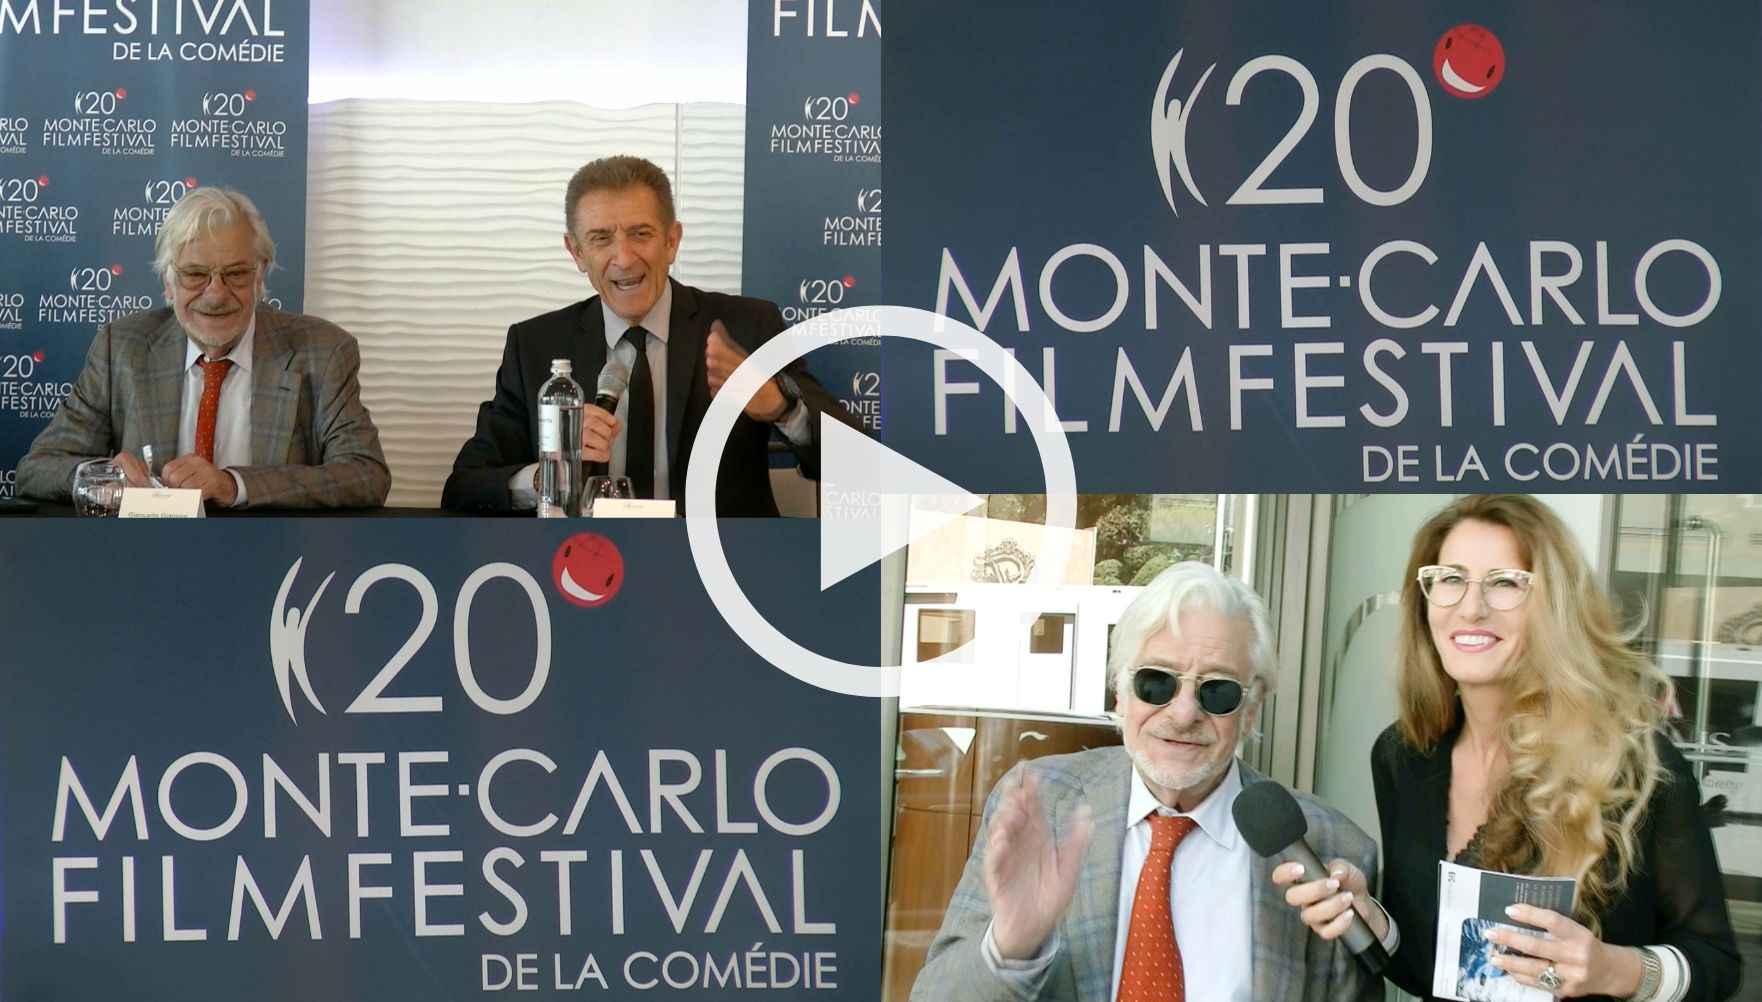 Monte-Carlo Film Festival de la Comédie- Prima Puntata presenta Cristina Montepilli (2)